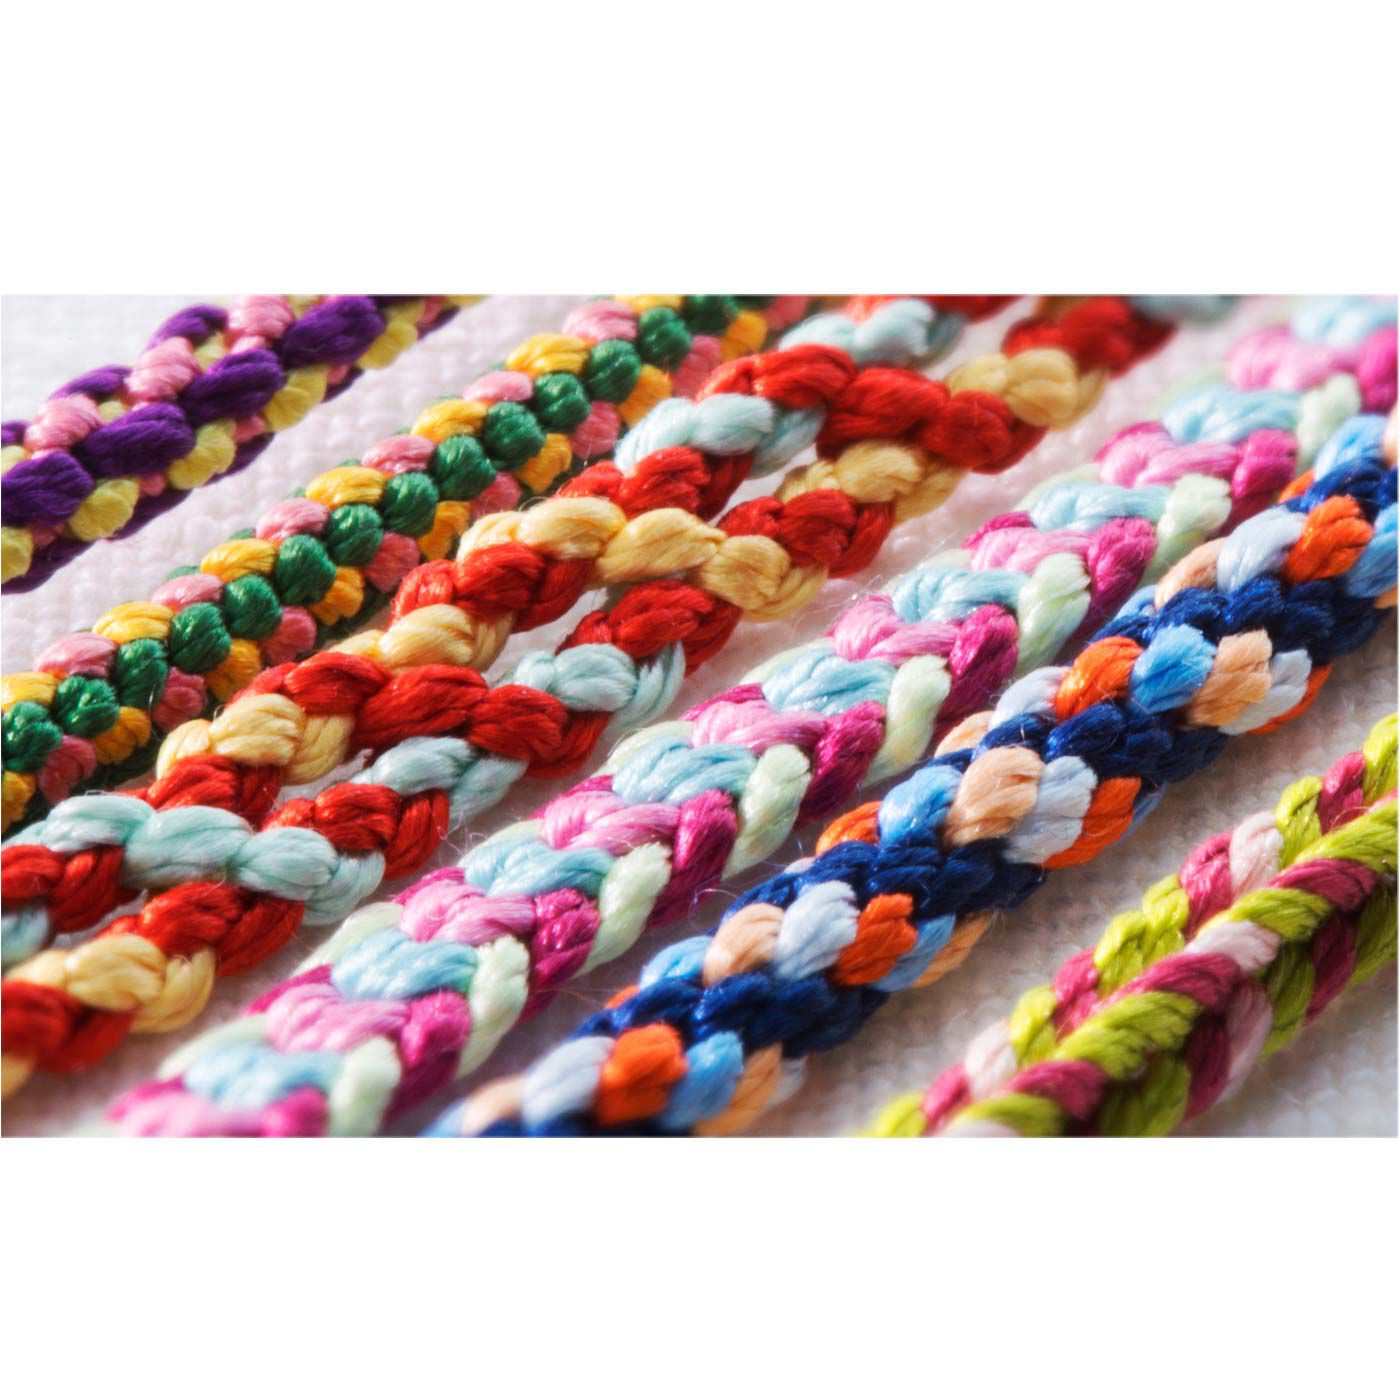 クチュリエ|いにしえの優美な模様 絹糸で組む くみひもブレスレットの会|色鮮やかな美しい絹糸の光沢。